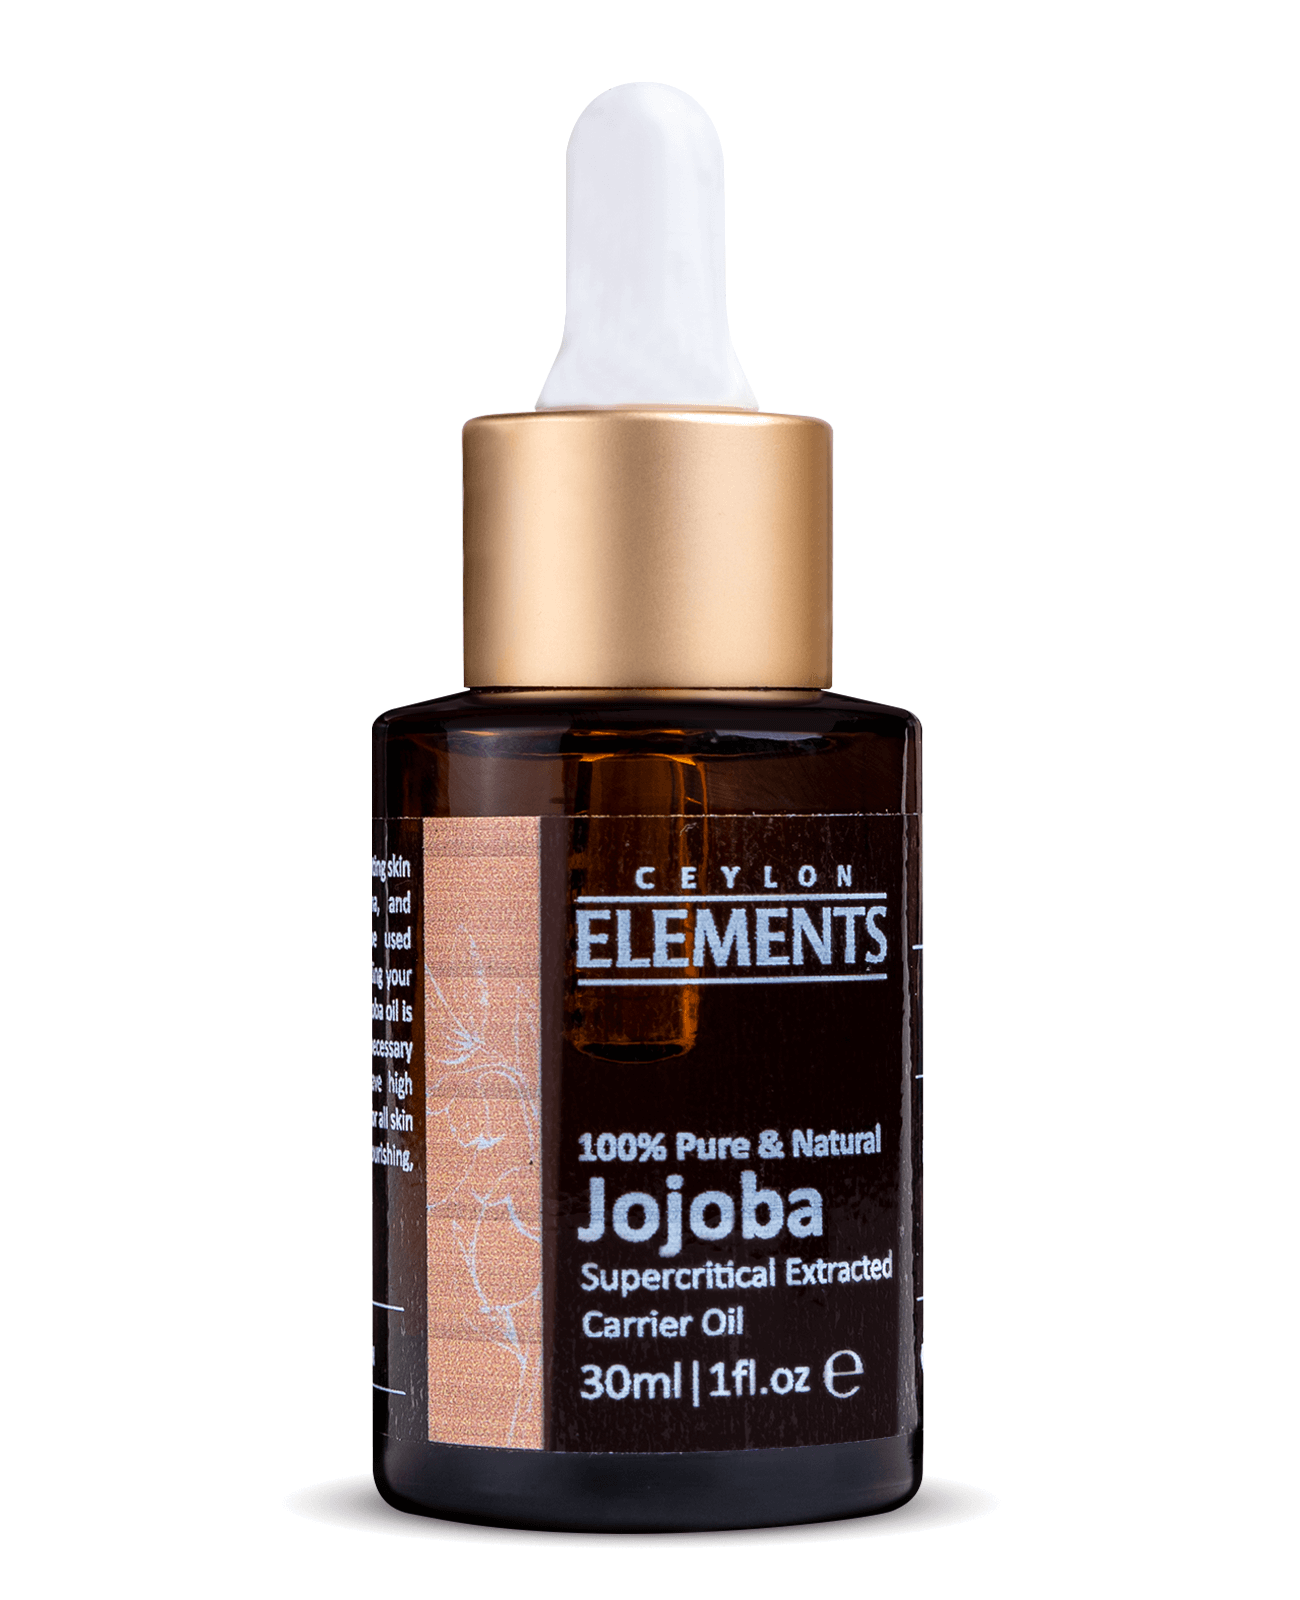 Ceylon Elements Jojoba Product Image 01